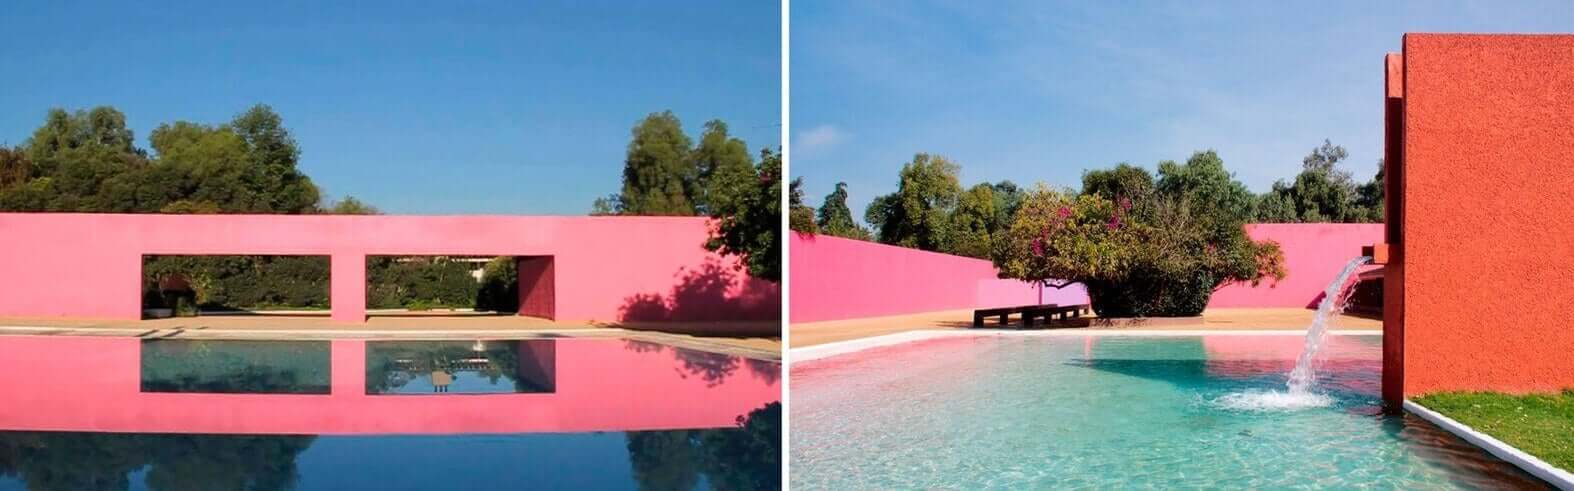 Gebouwen met een roze muur